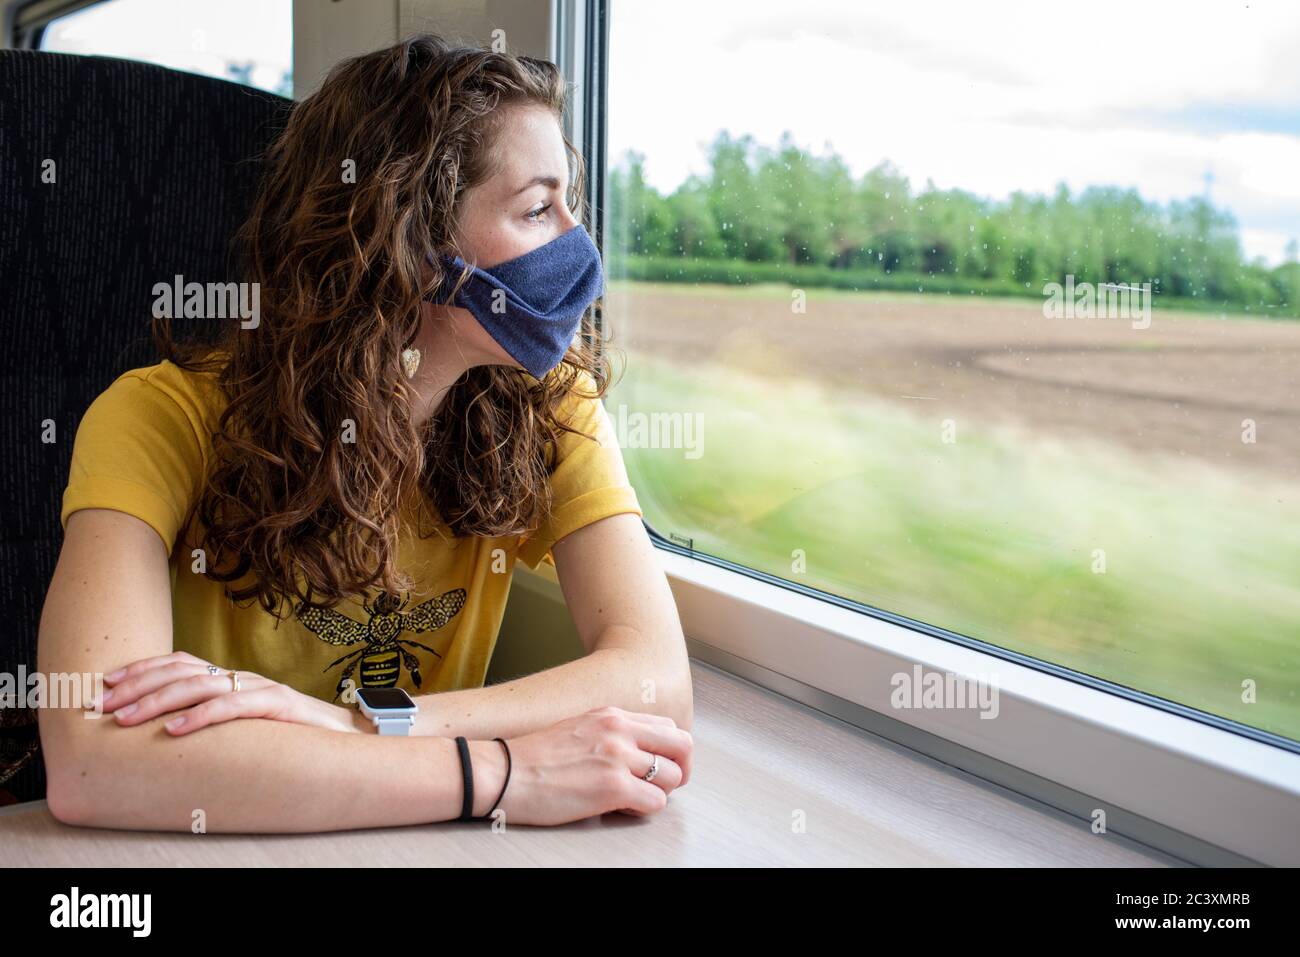 Indossare una maschera sul treno coronavirus uk viaggio ferrovia trasporto pubblico distanza sociale rimanere al sicuro Foto Stock